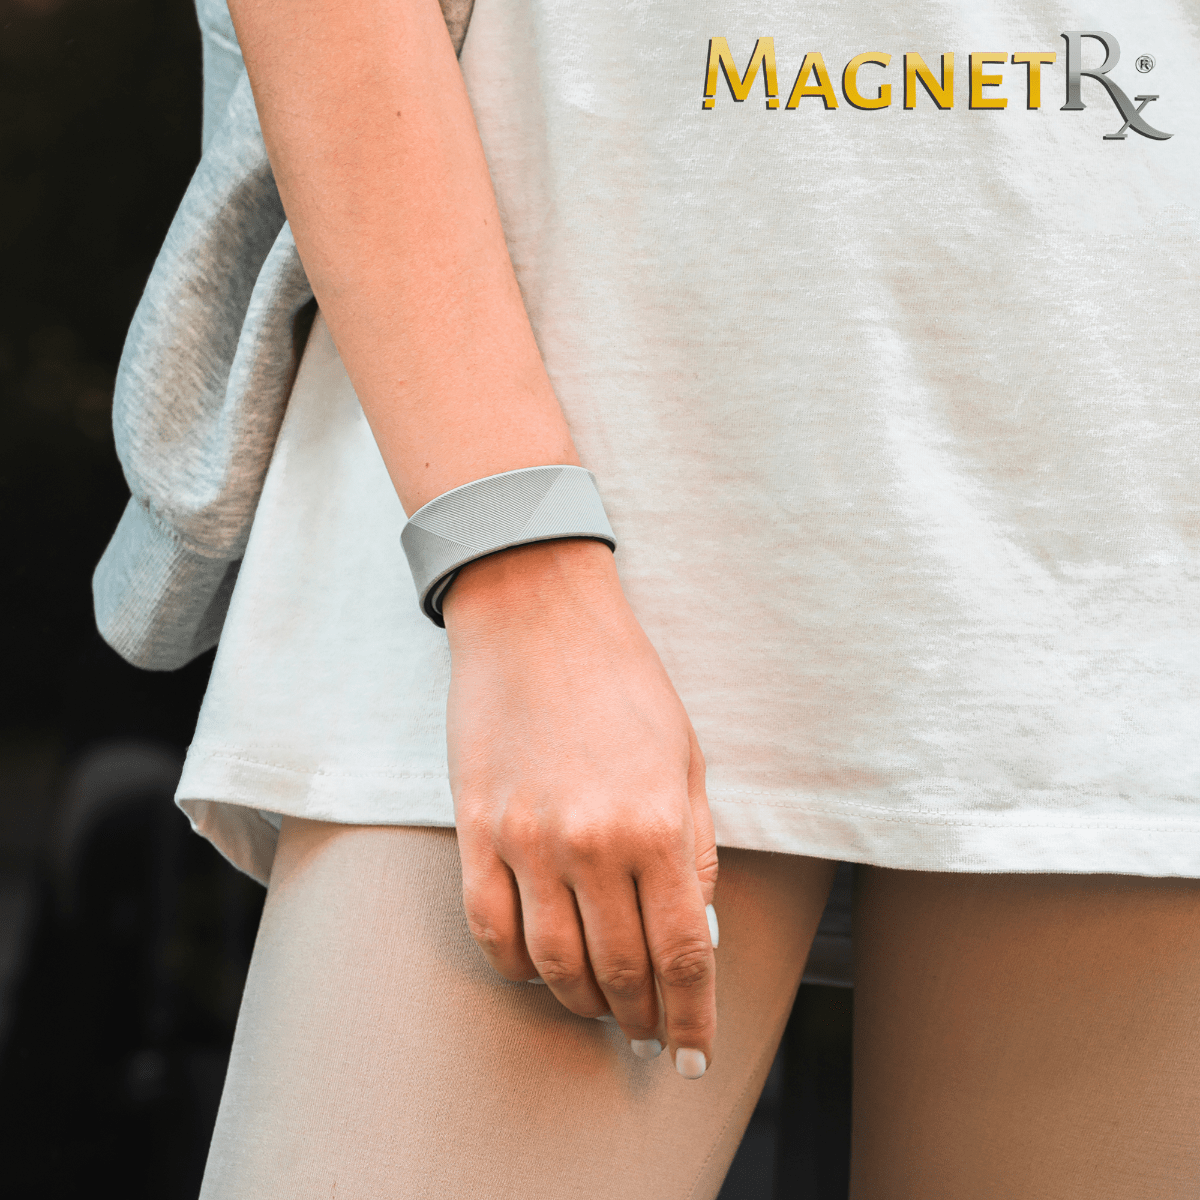 Magnetic Bracelet Ultra Strength Sports Magnetic Bracelet (Grey) MagnetRX